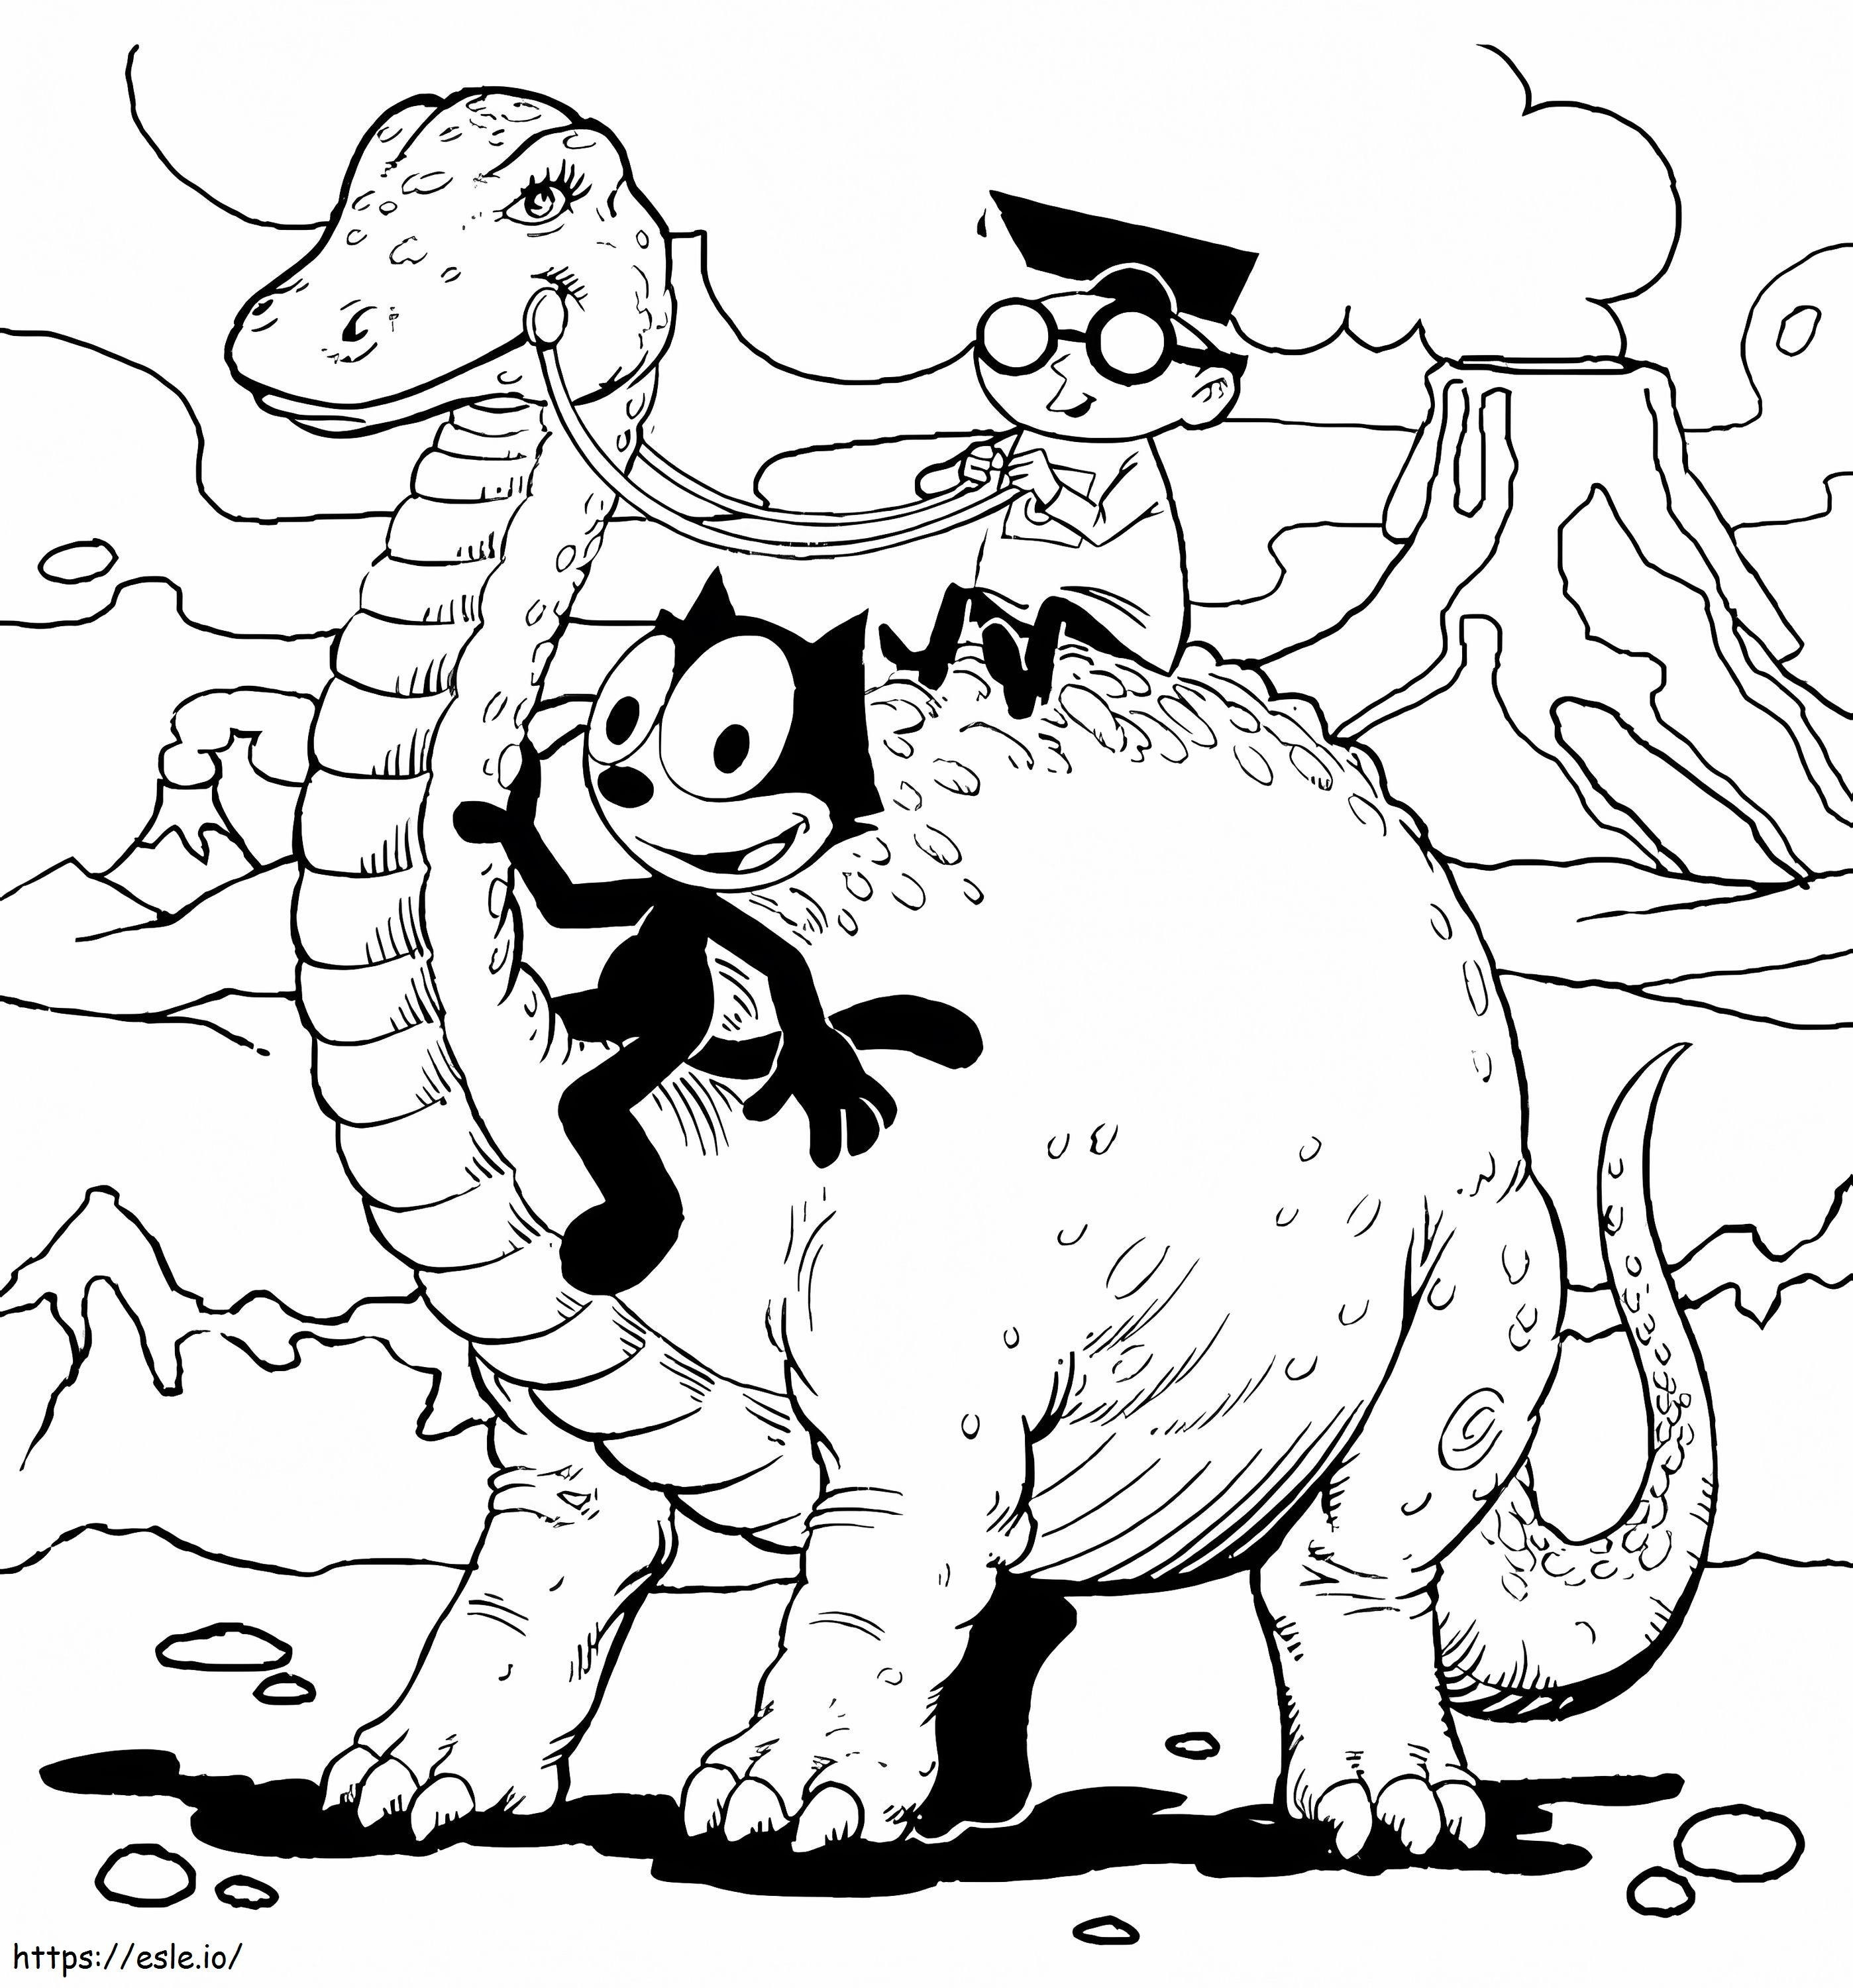 Kedi ve Dinozor Felix boyama